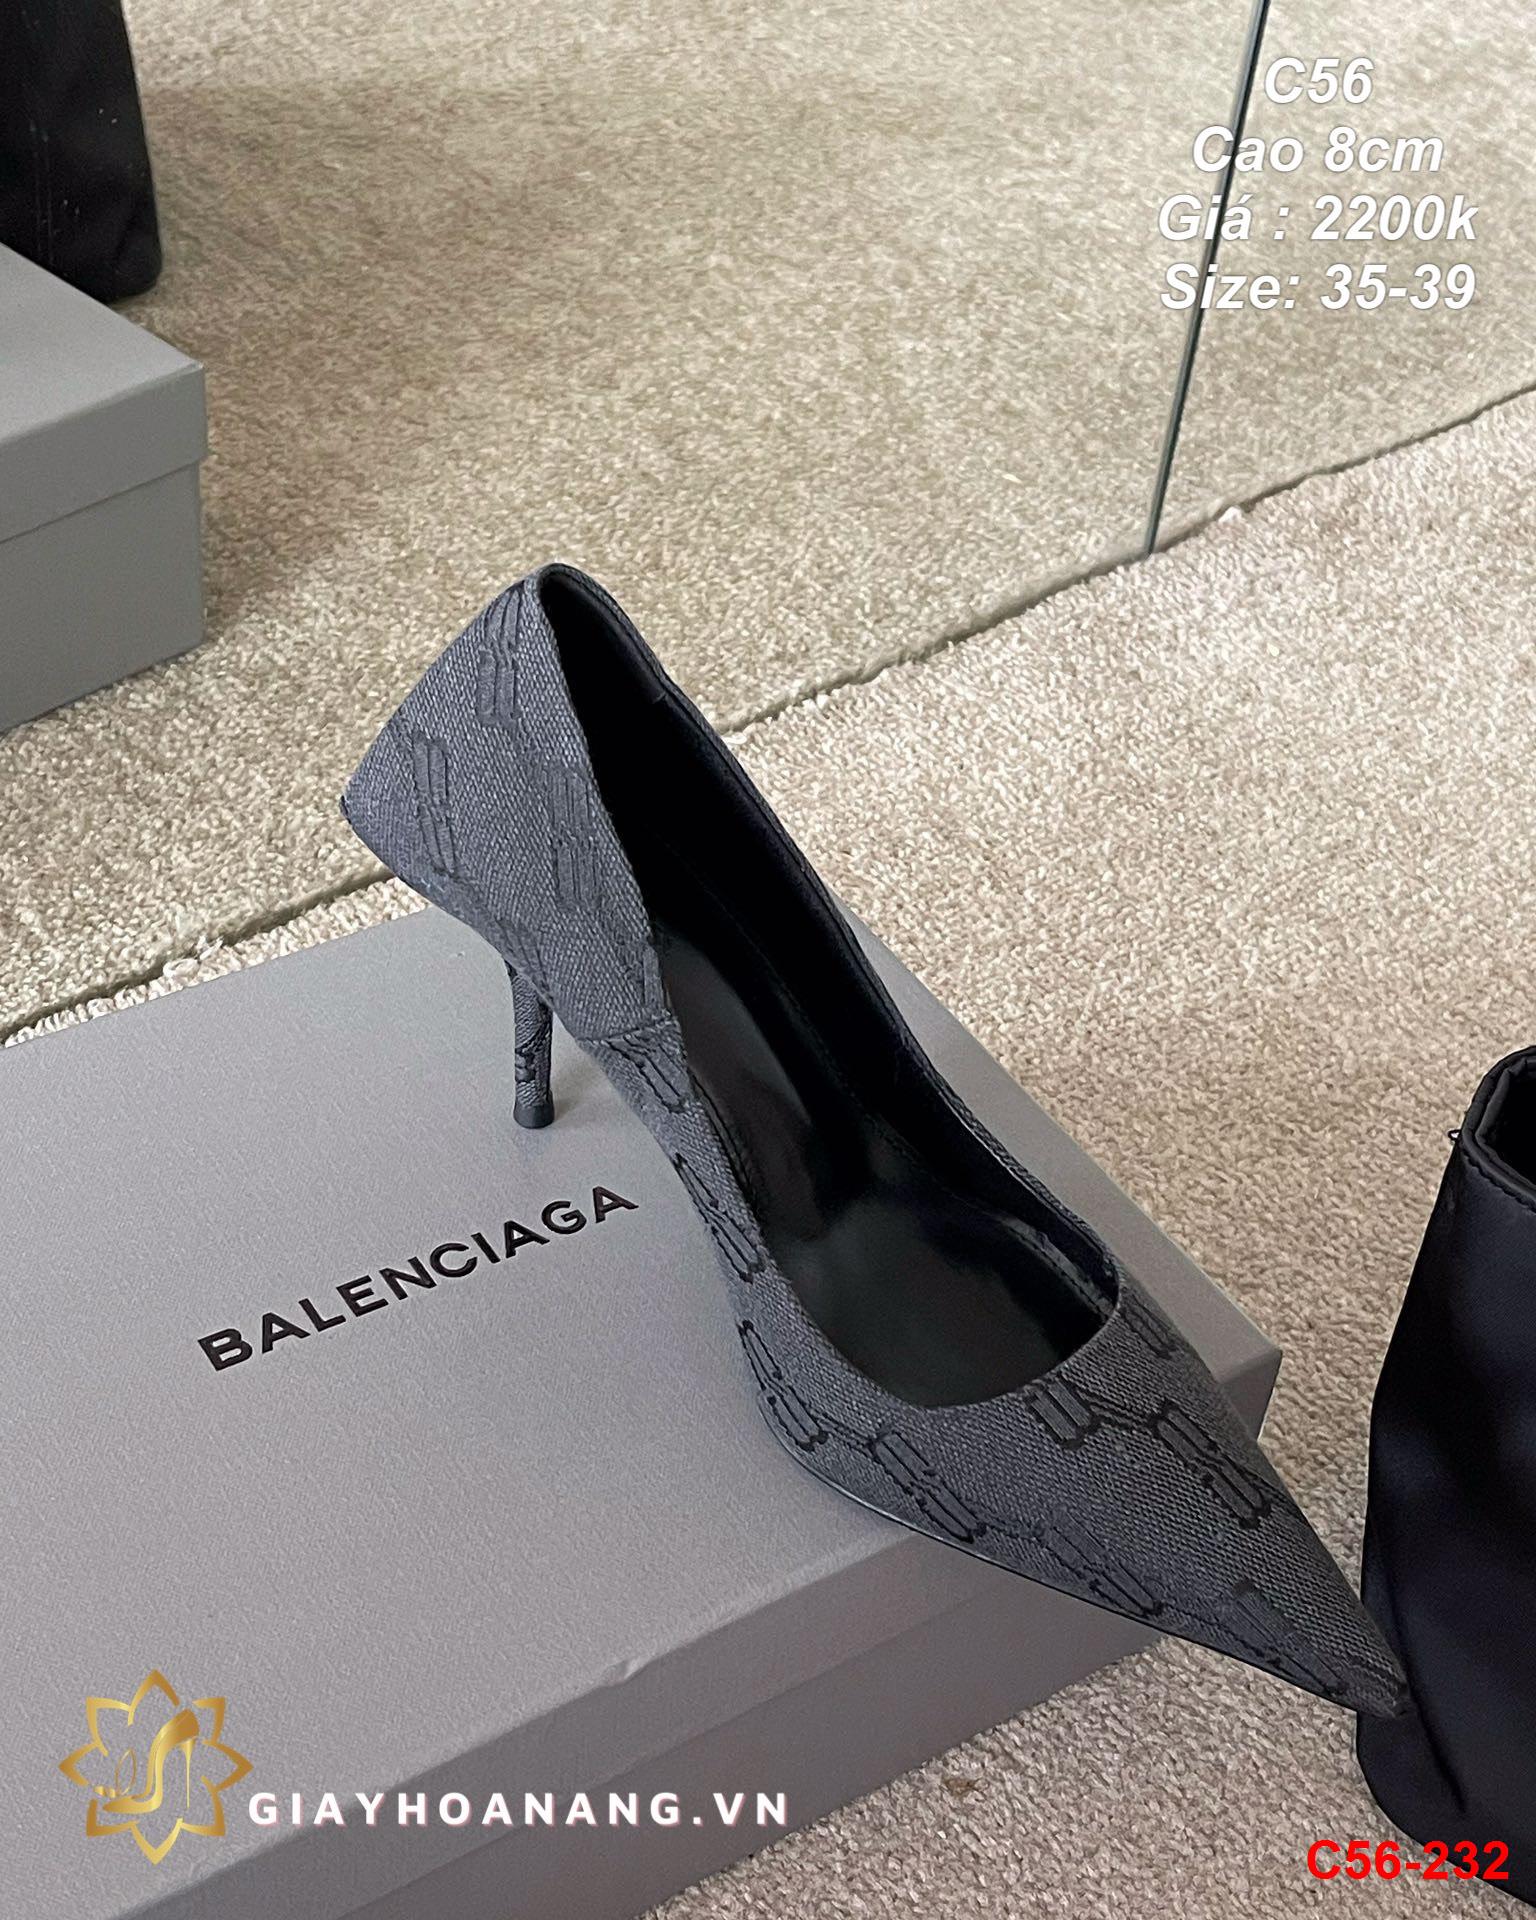 C56-232 Balenciaga giày cao 8cm siêu cấp